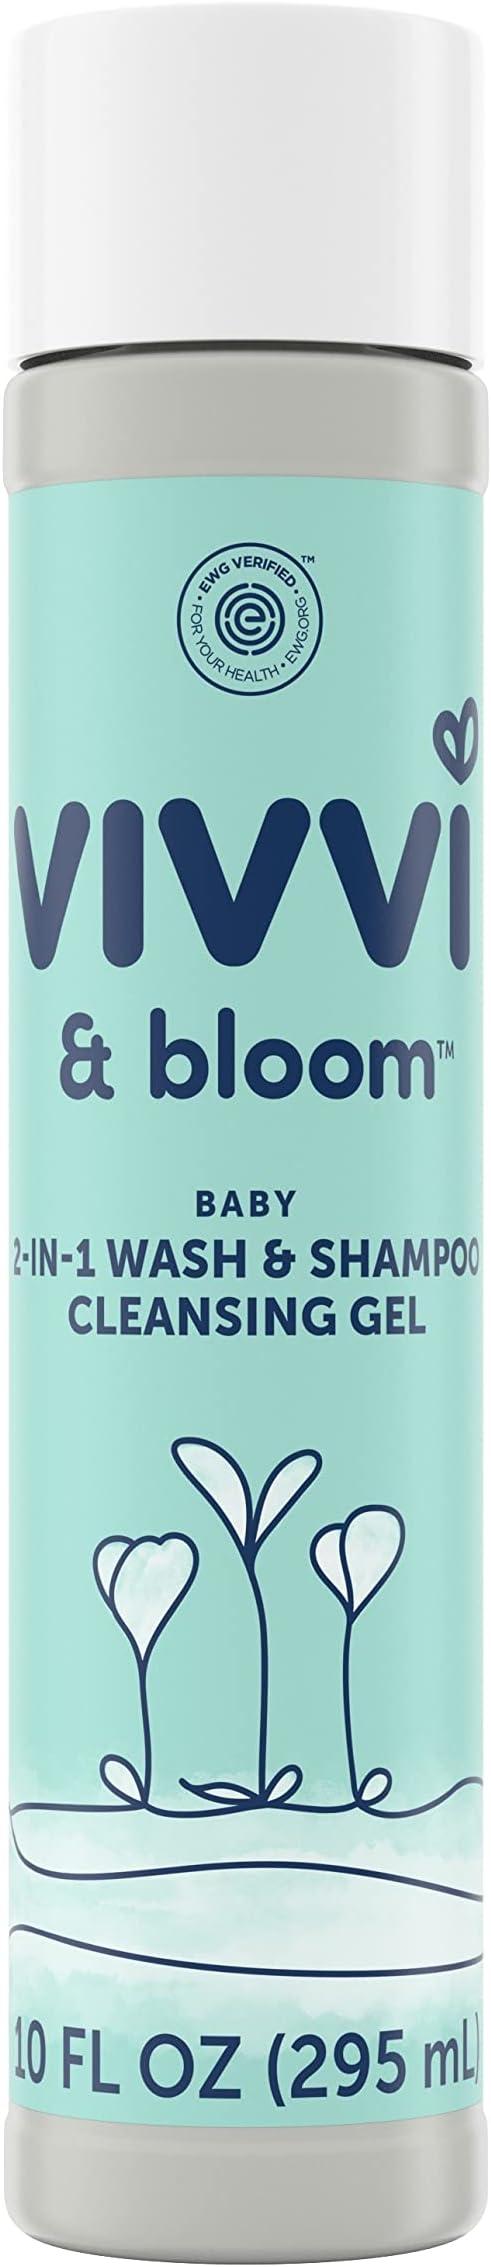 vivvi and bloom gentle 2-in-1 baby wash and shampoo cleansing gel  vivvi & bloom b0b3bv7krk